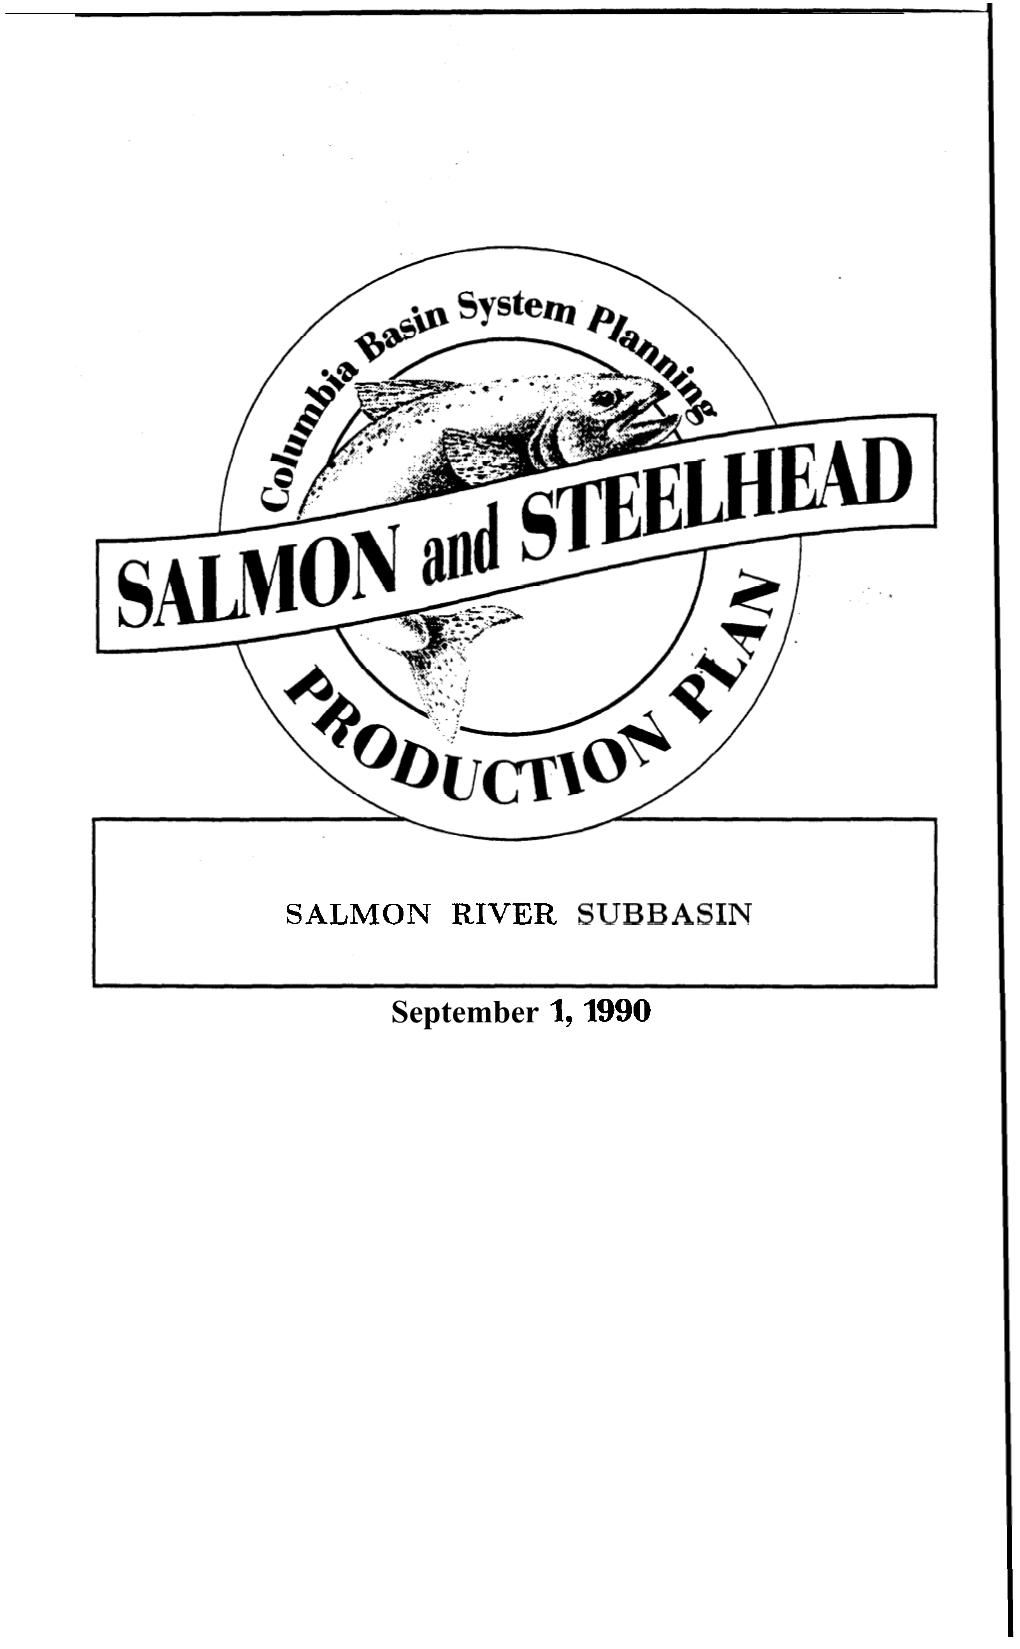 Salmon River Subbasin